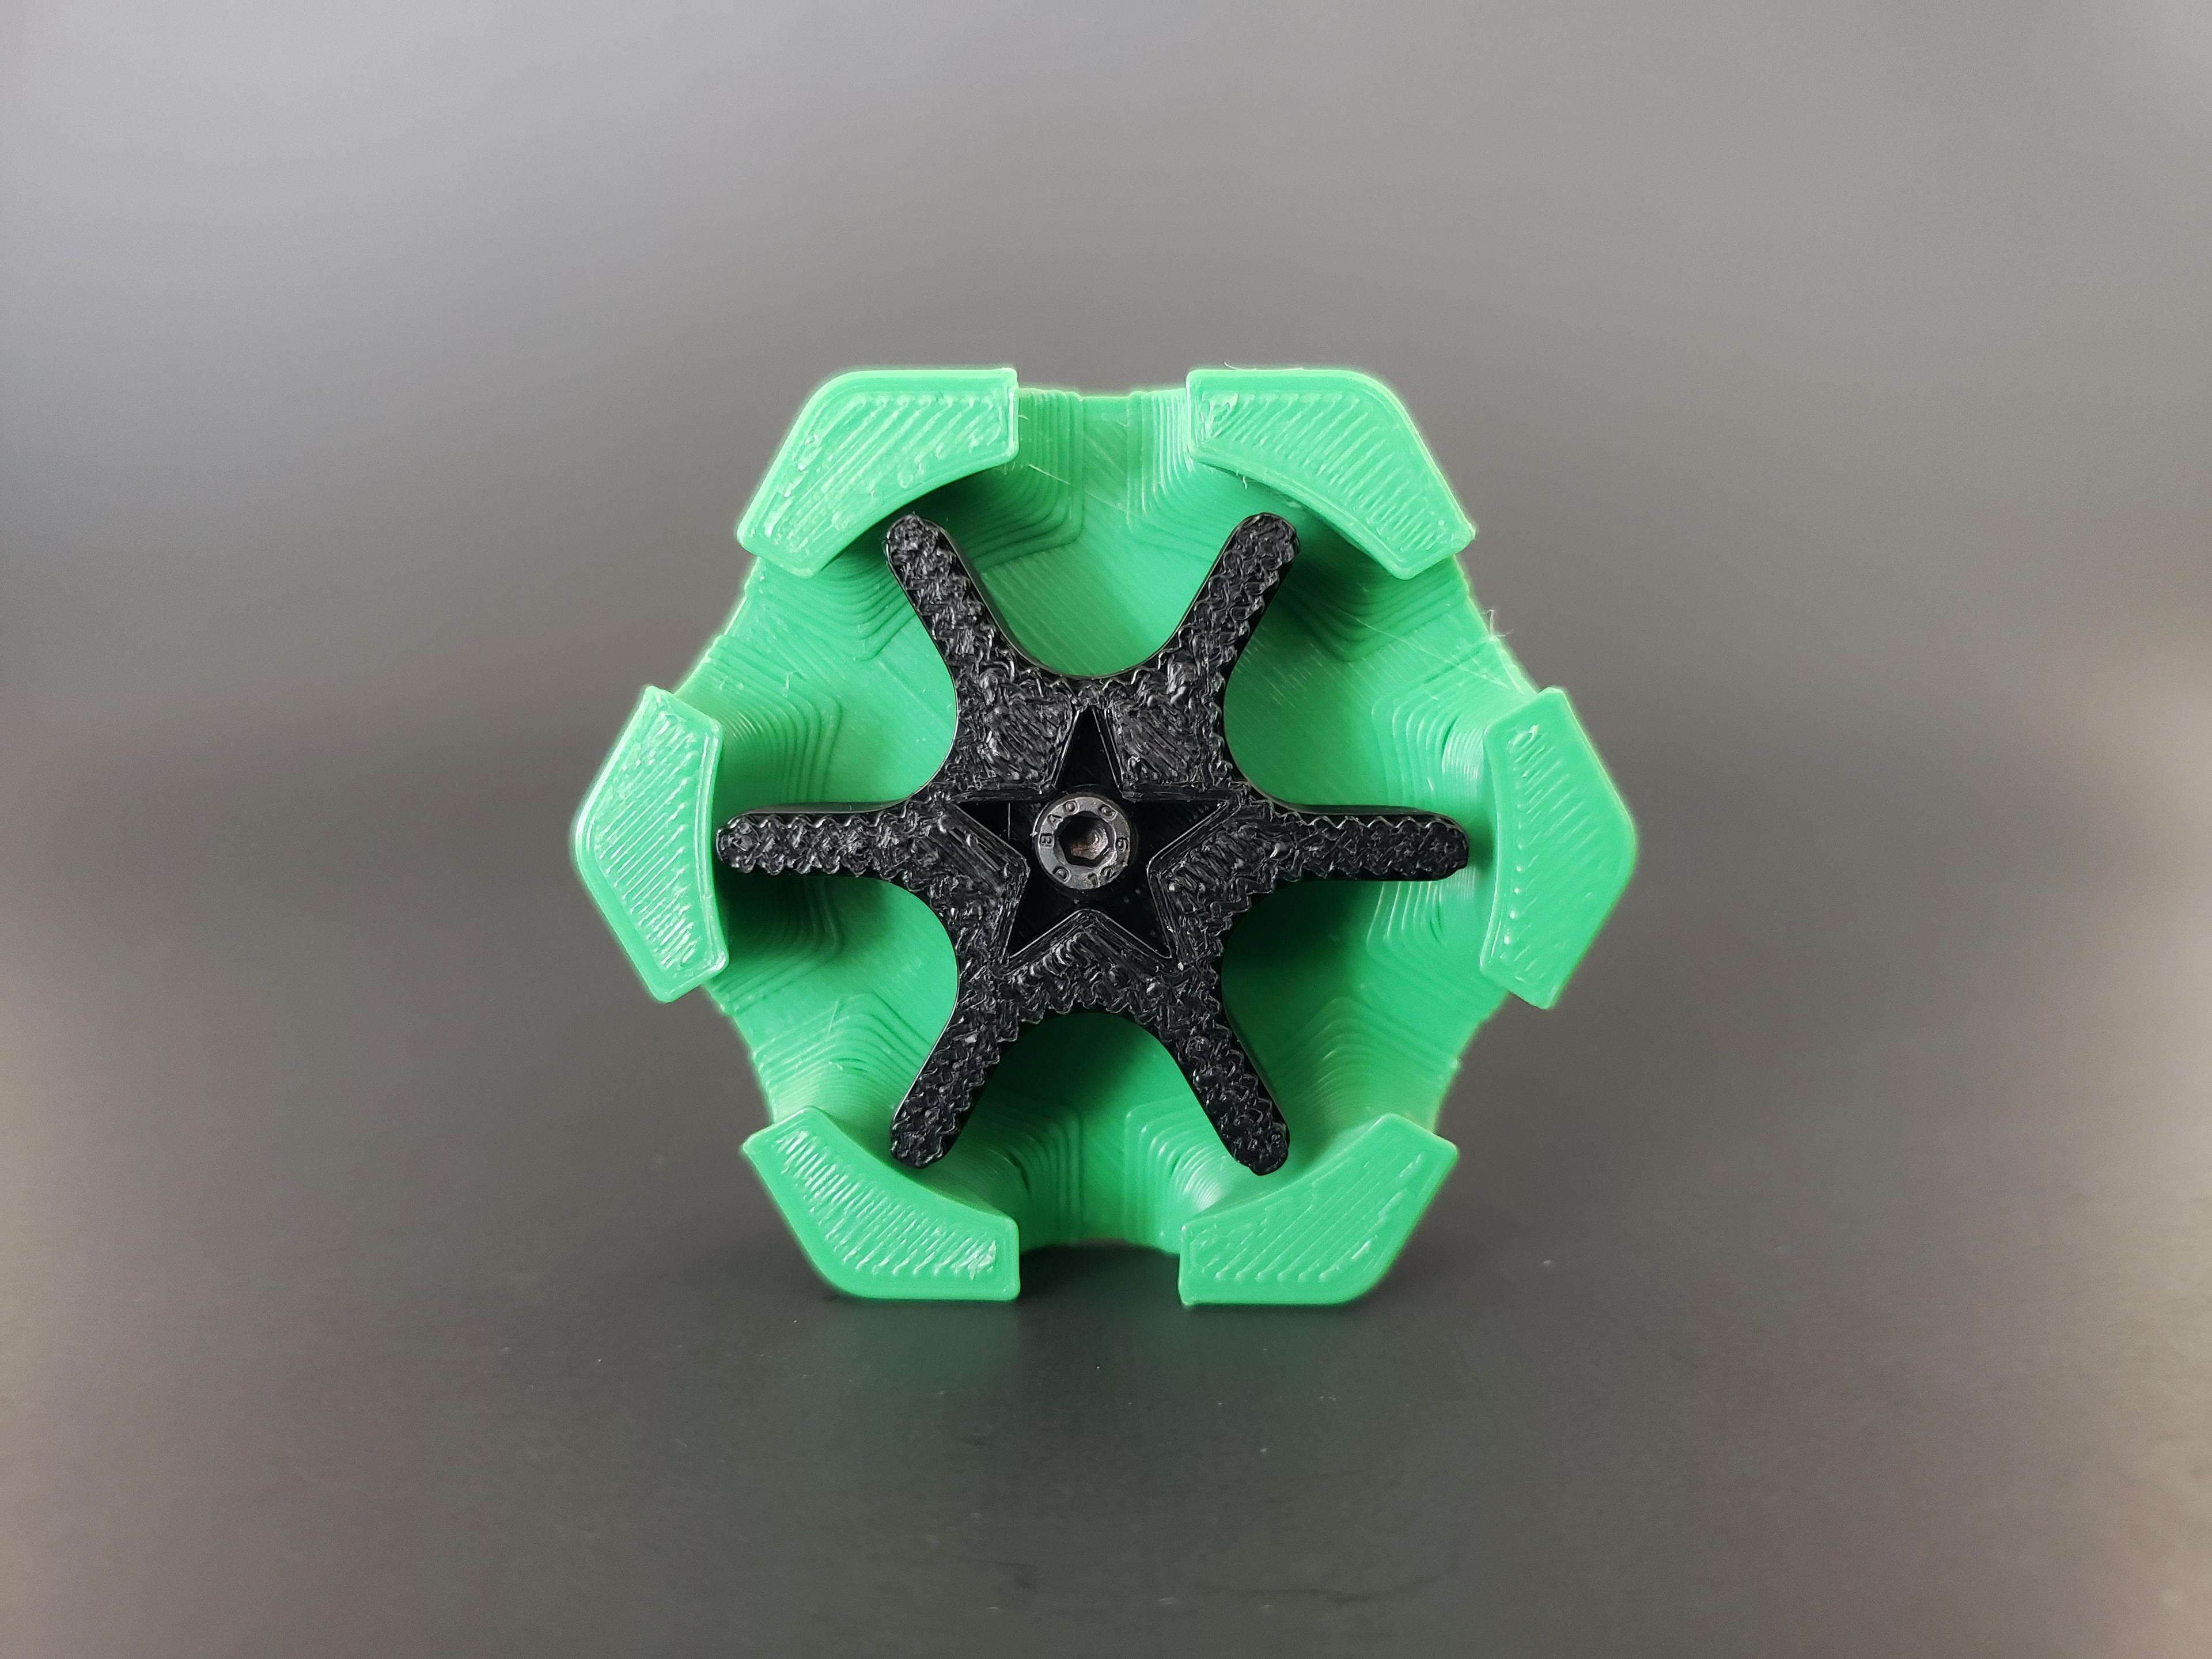 Hextraction Gear Spinner Tile 3d model